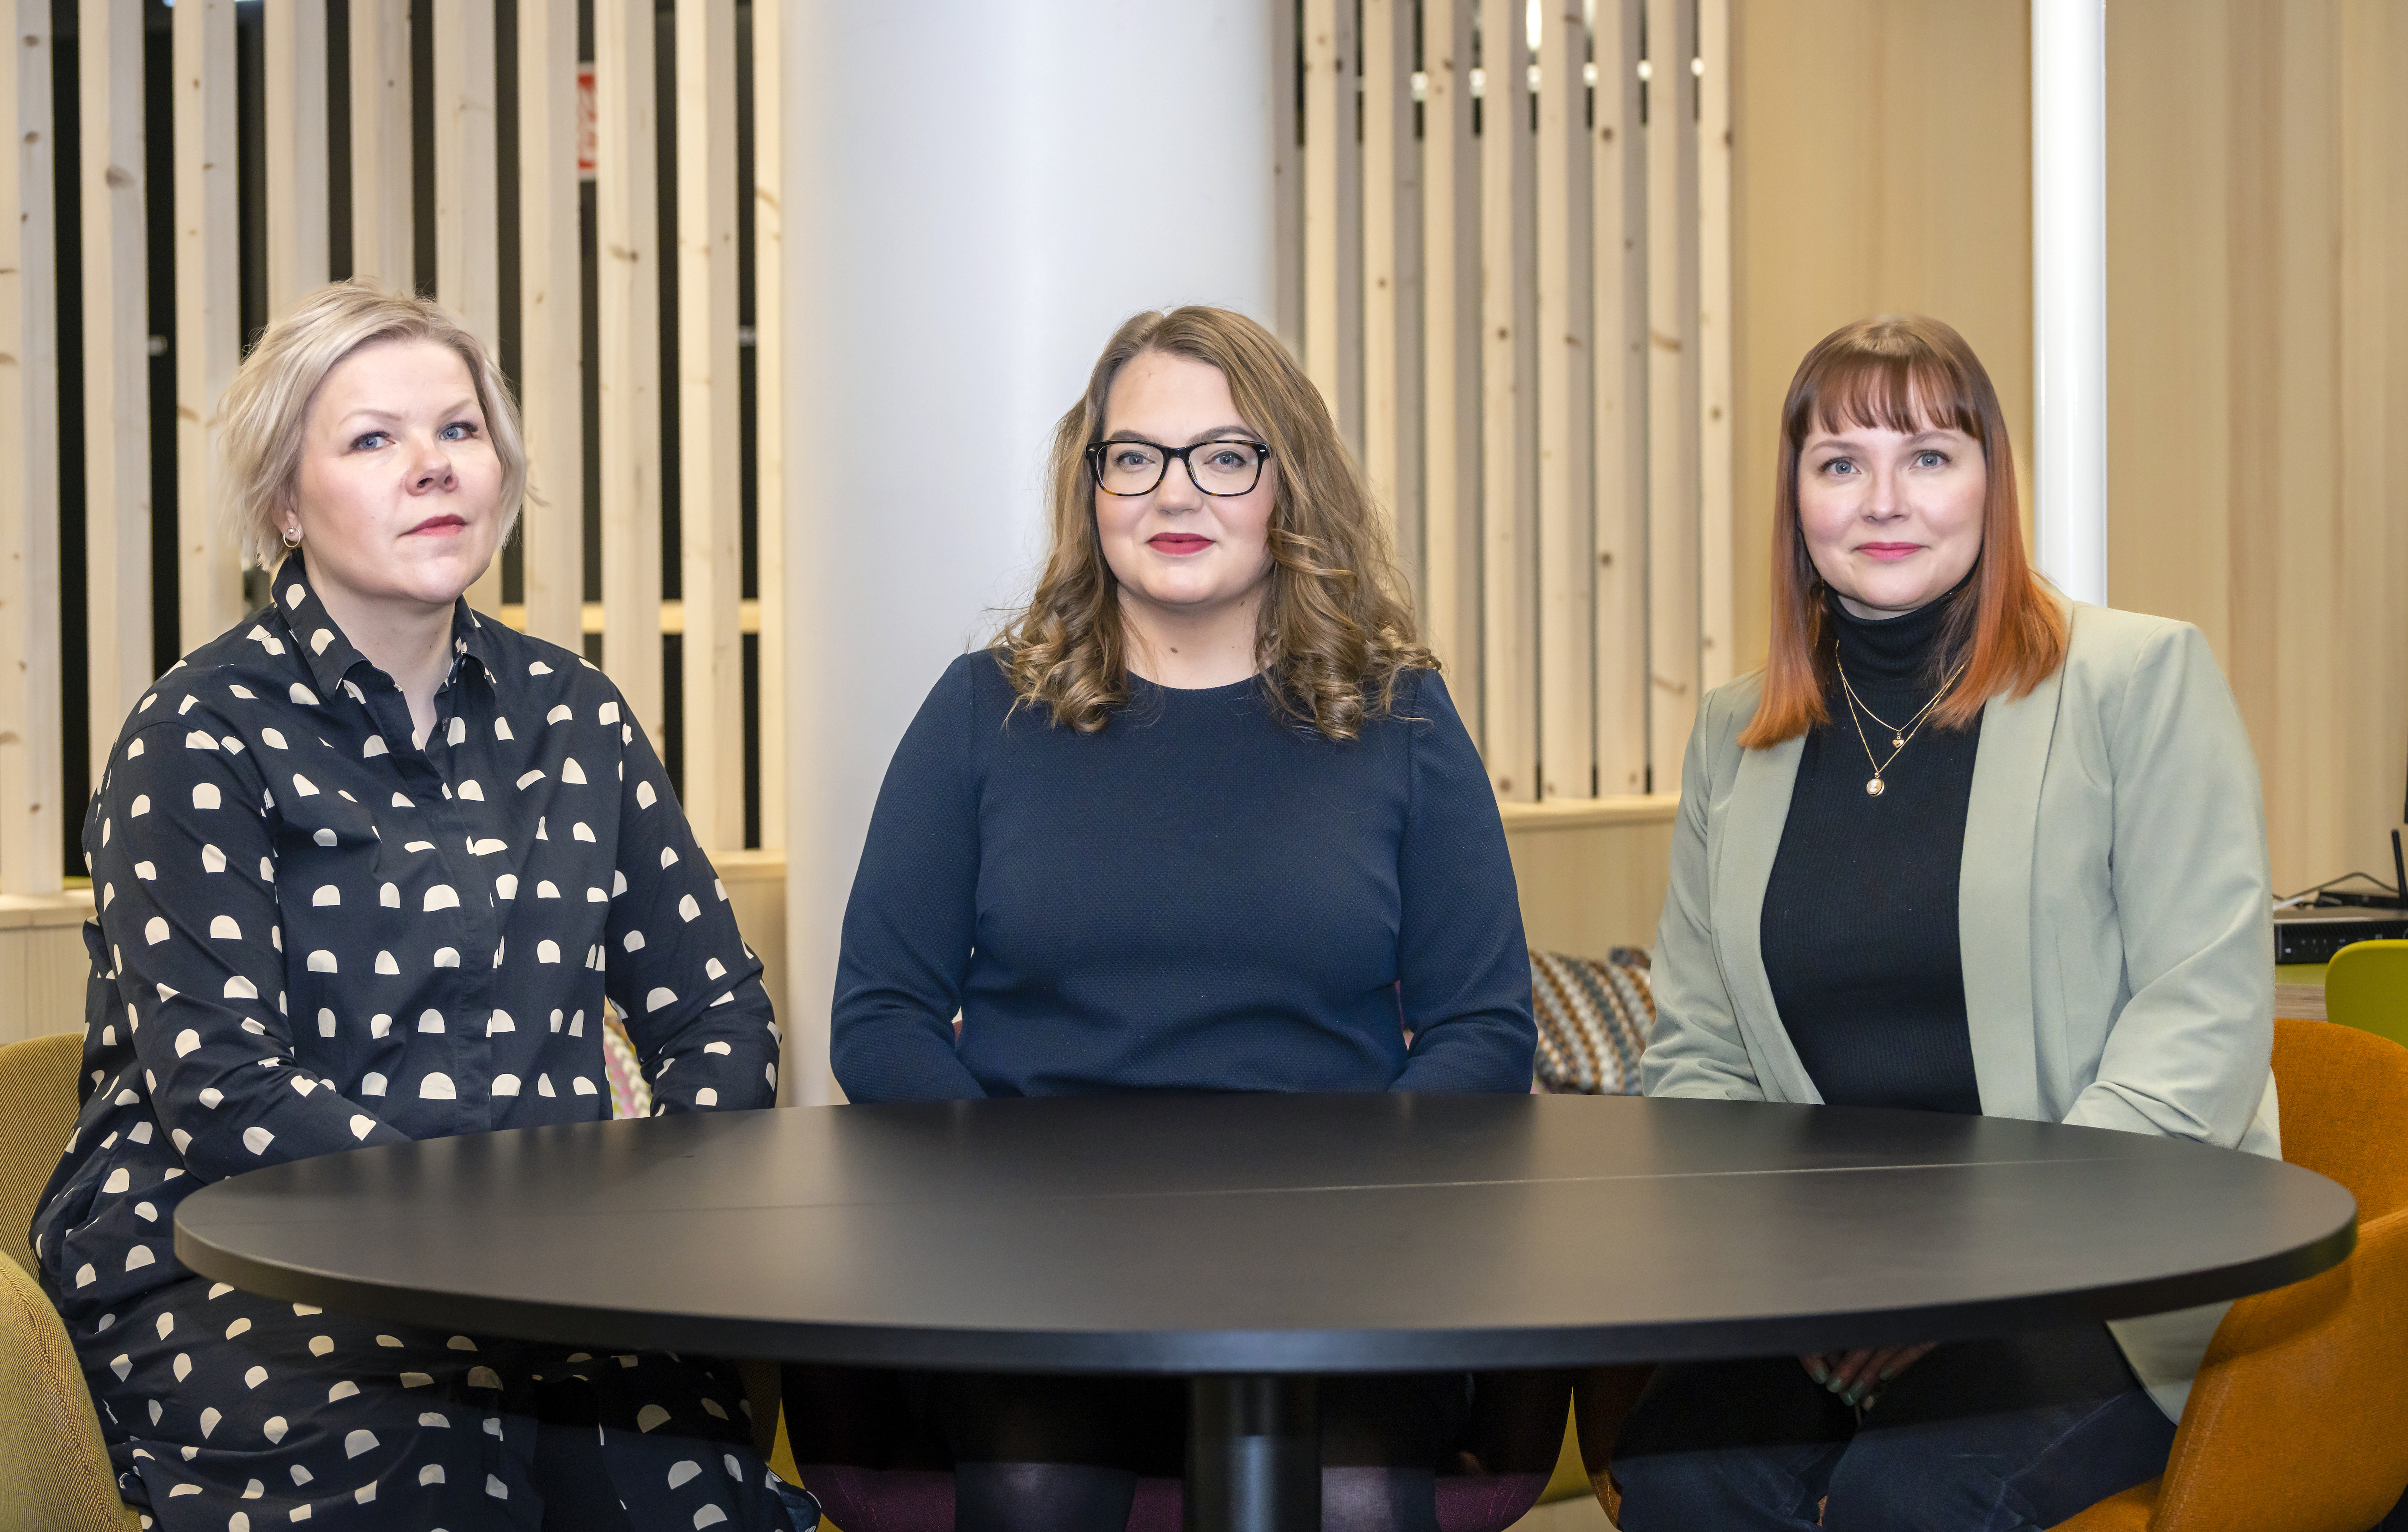 Kuvassa Tiina Niemelä, Anni Karinkanta ja Heli Laitila istumassa mustan pyöreän pöydän ympärillä.